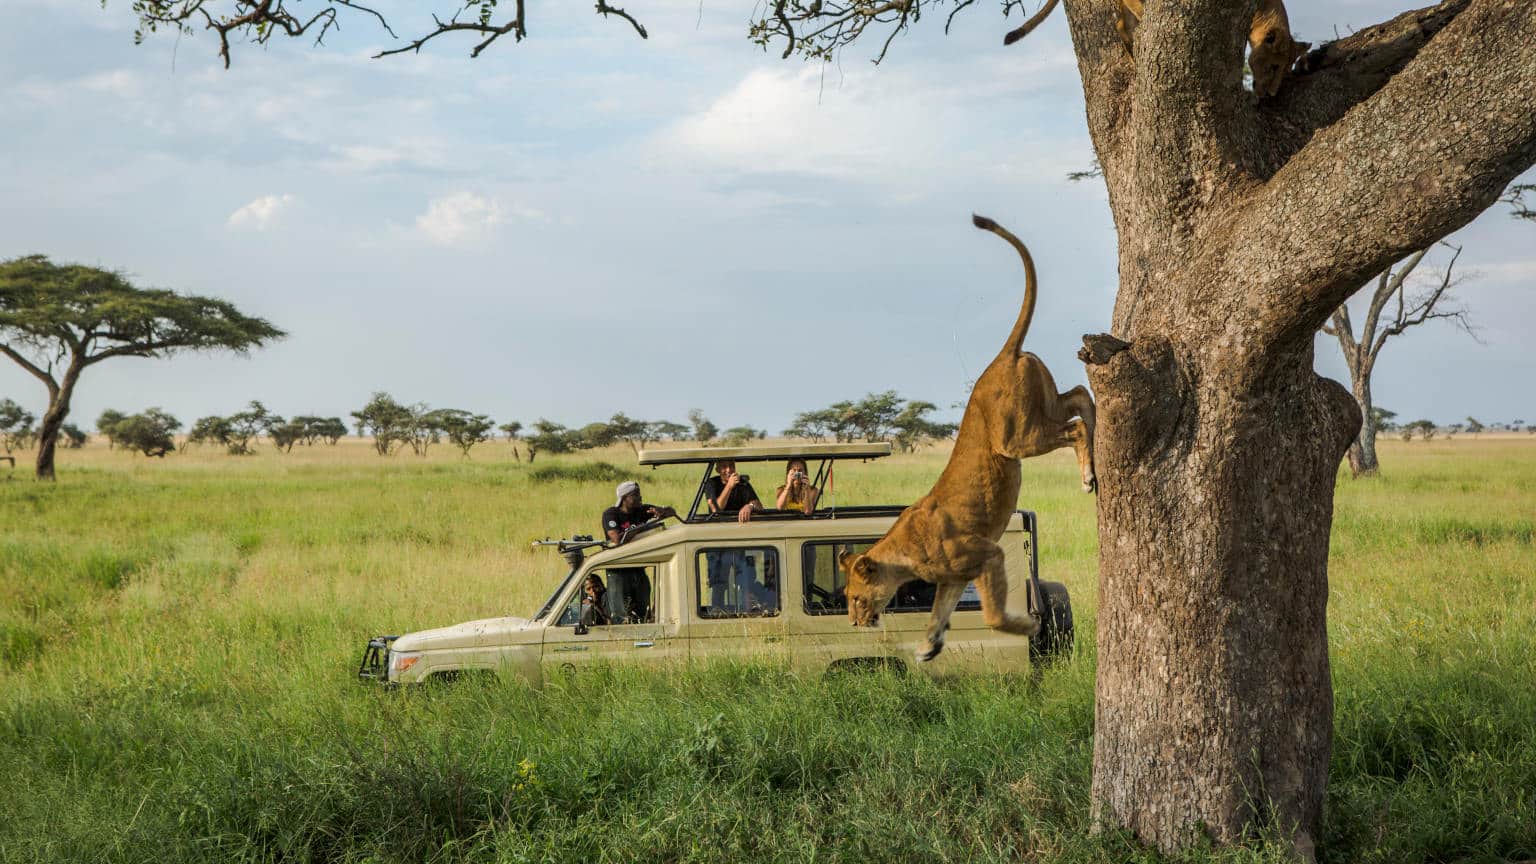 Tanzania-Serengeti-Safari-Truck-Tree-Lion-Jumping-Off-0M4A2662-Lg-RGB